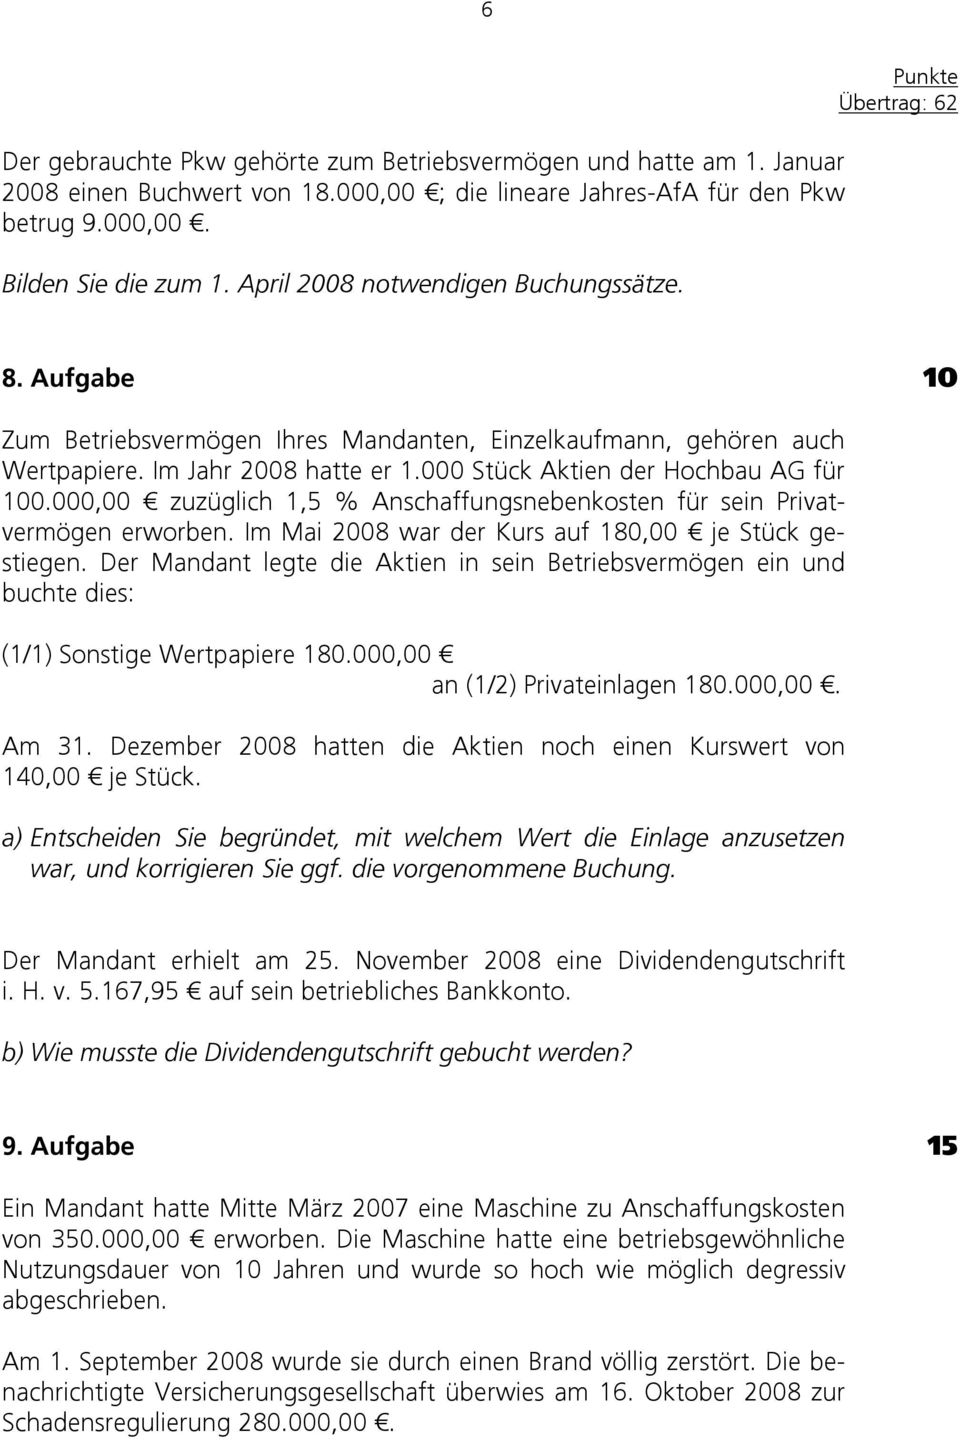 000 Stück Aktien der Hochbau AG für 100.000,00 zuzüglich 1,5 % Anschaffungsnebenkosten für sein Privatvermögen erworben. Im Mai 2008 war der Kurs auf 180,00 je Stück gestiegen.